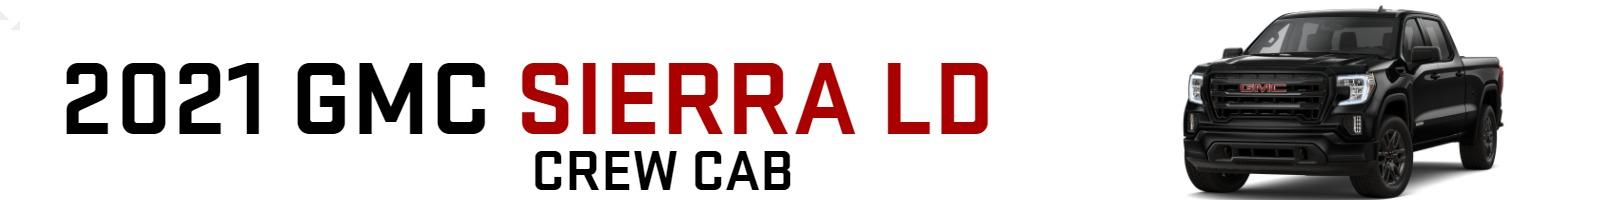 2021 GMC Sierra LD Crew Cab